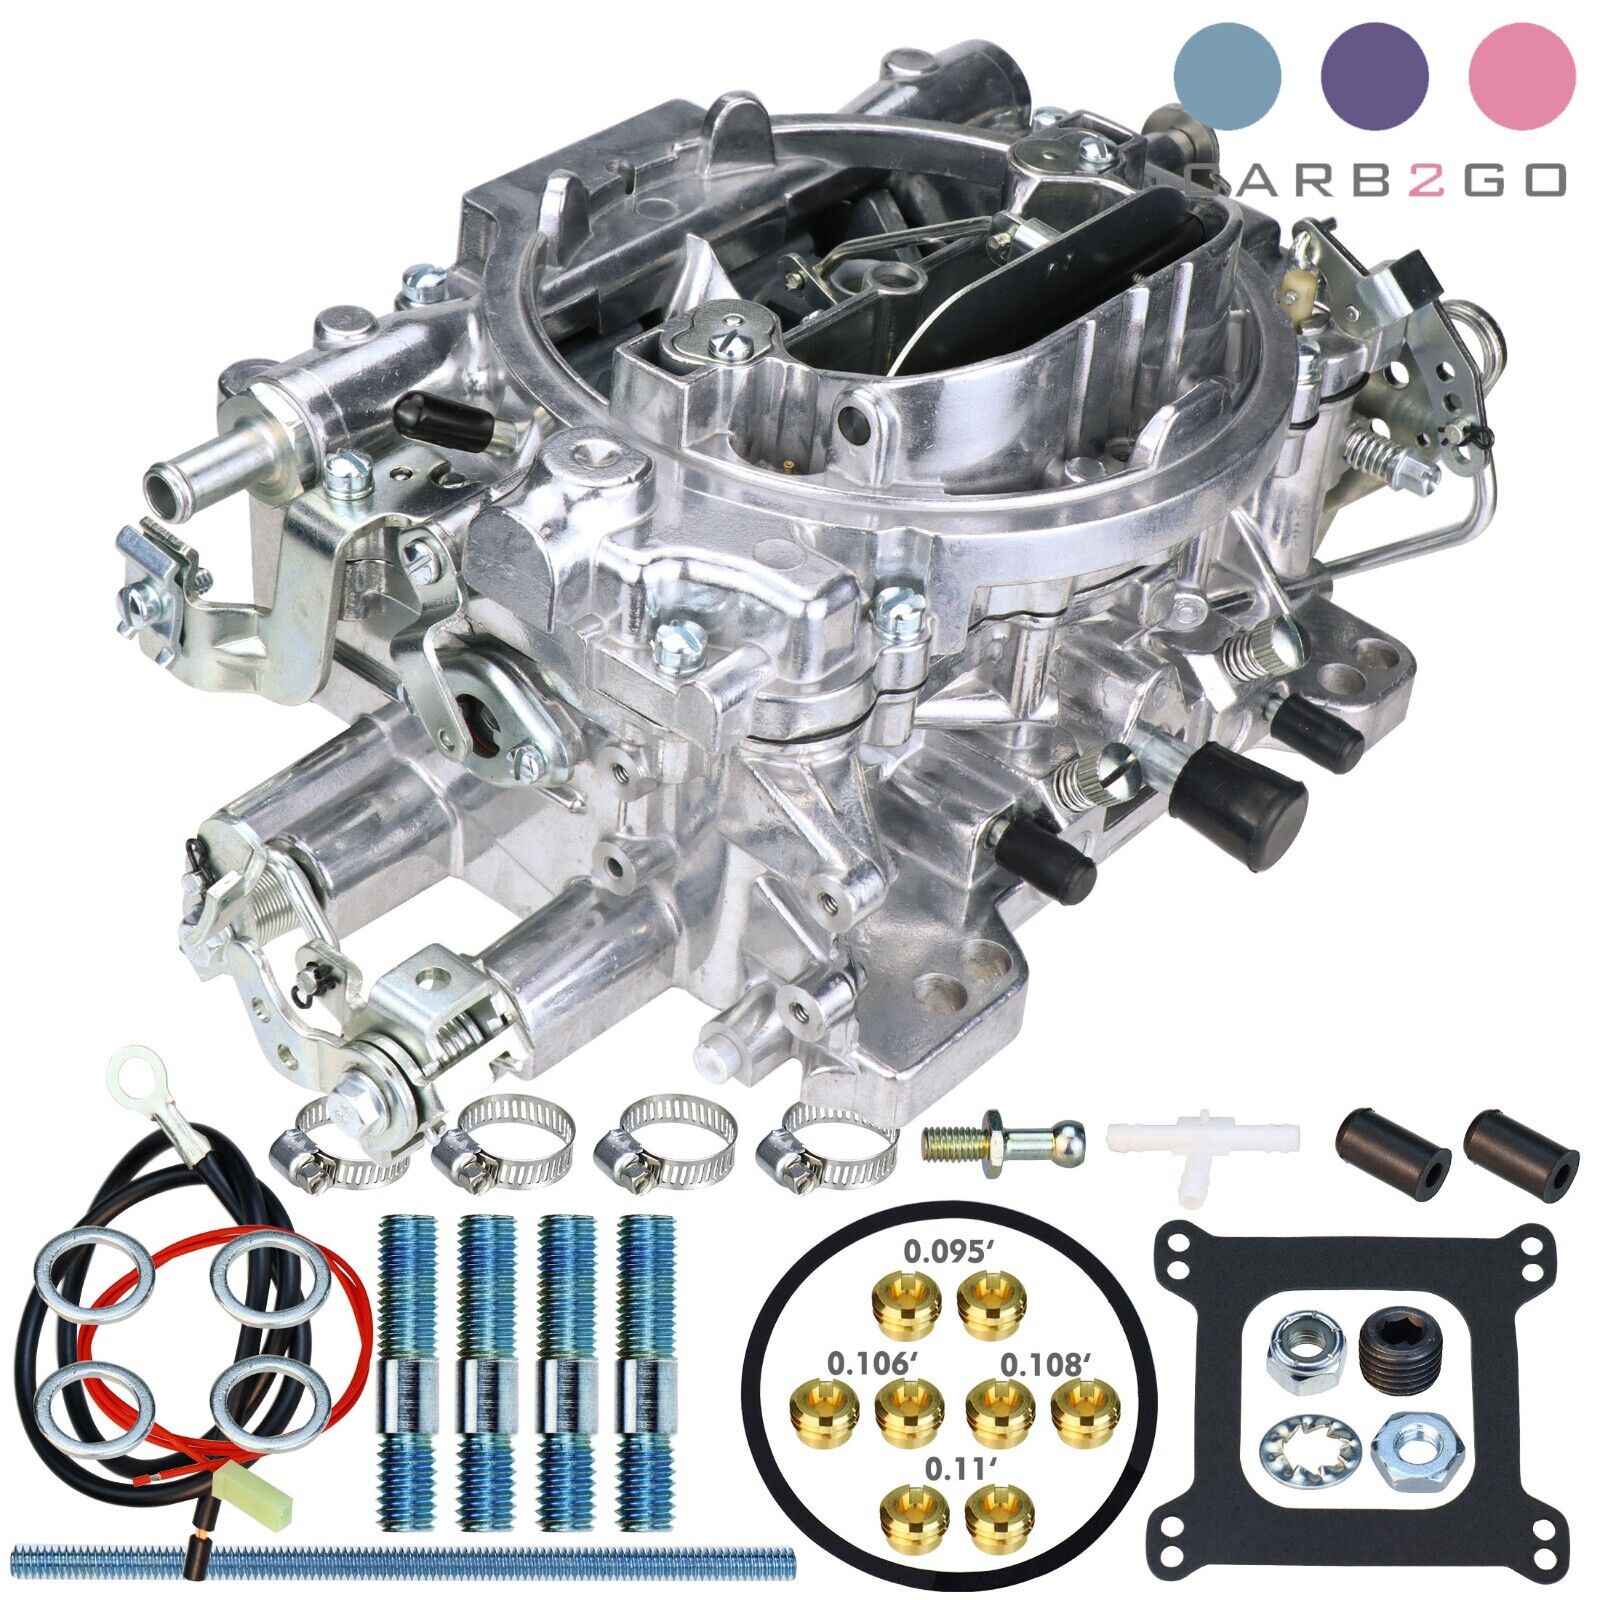 Brand New 1405 Performer Series Carburetor 4BBL 600CFM Manual Choke